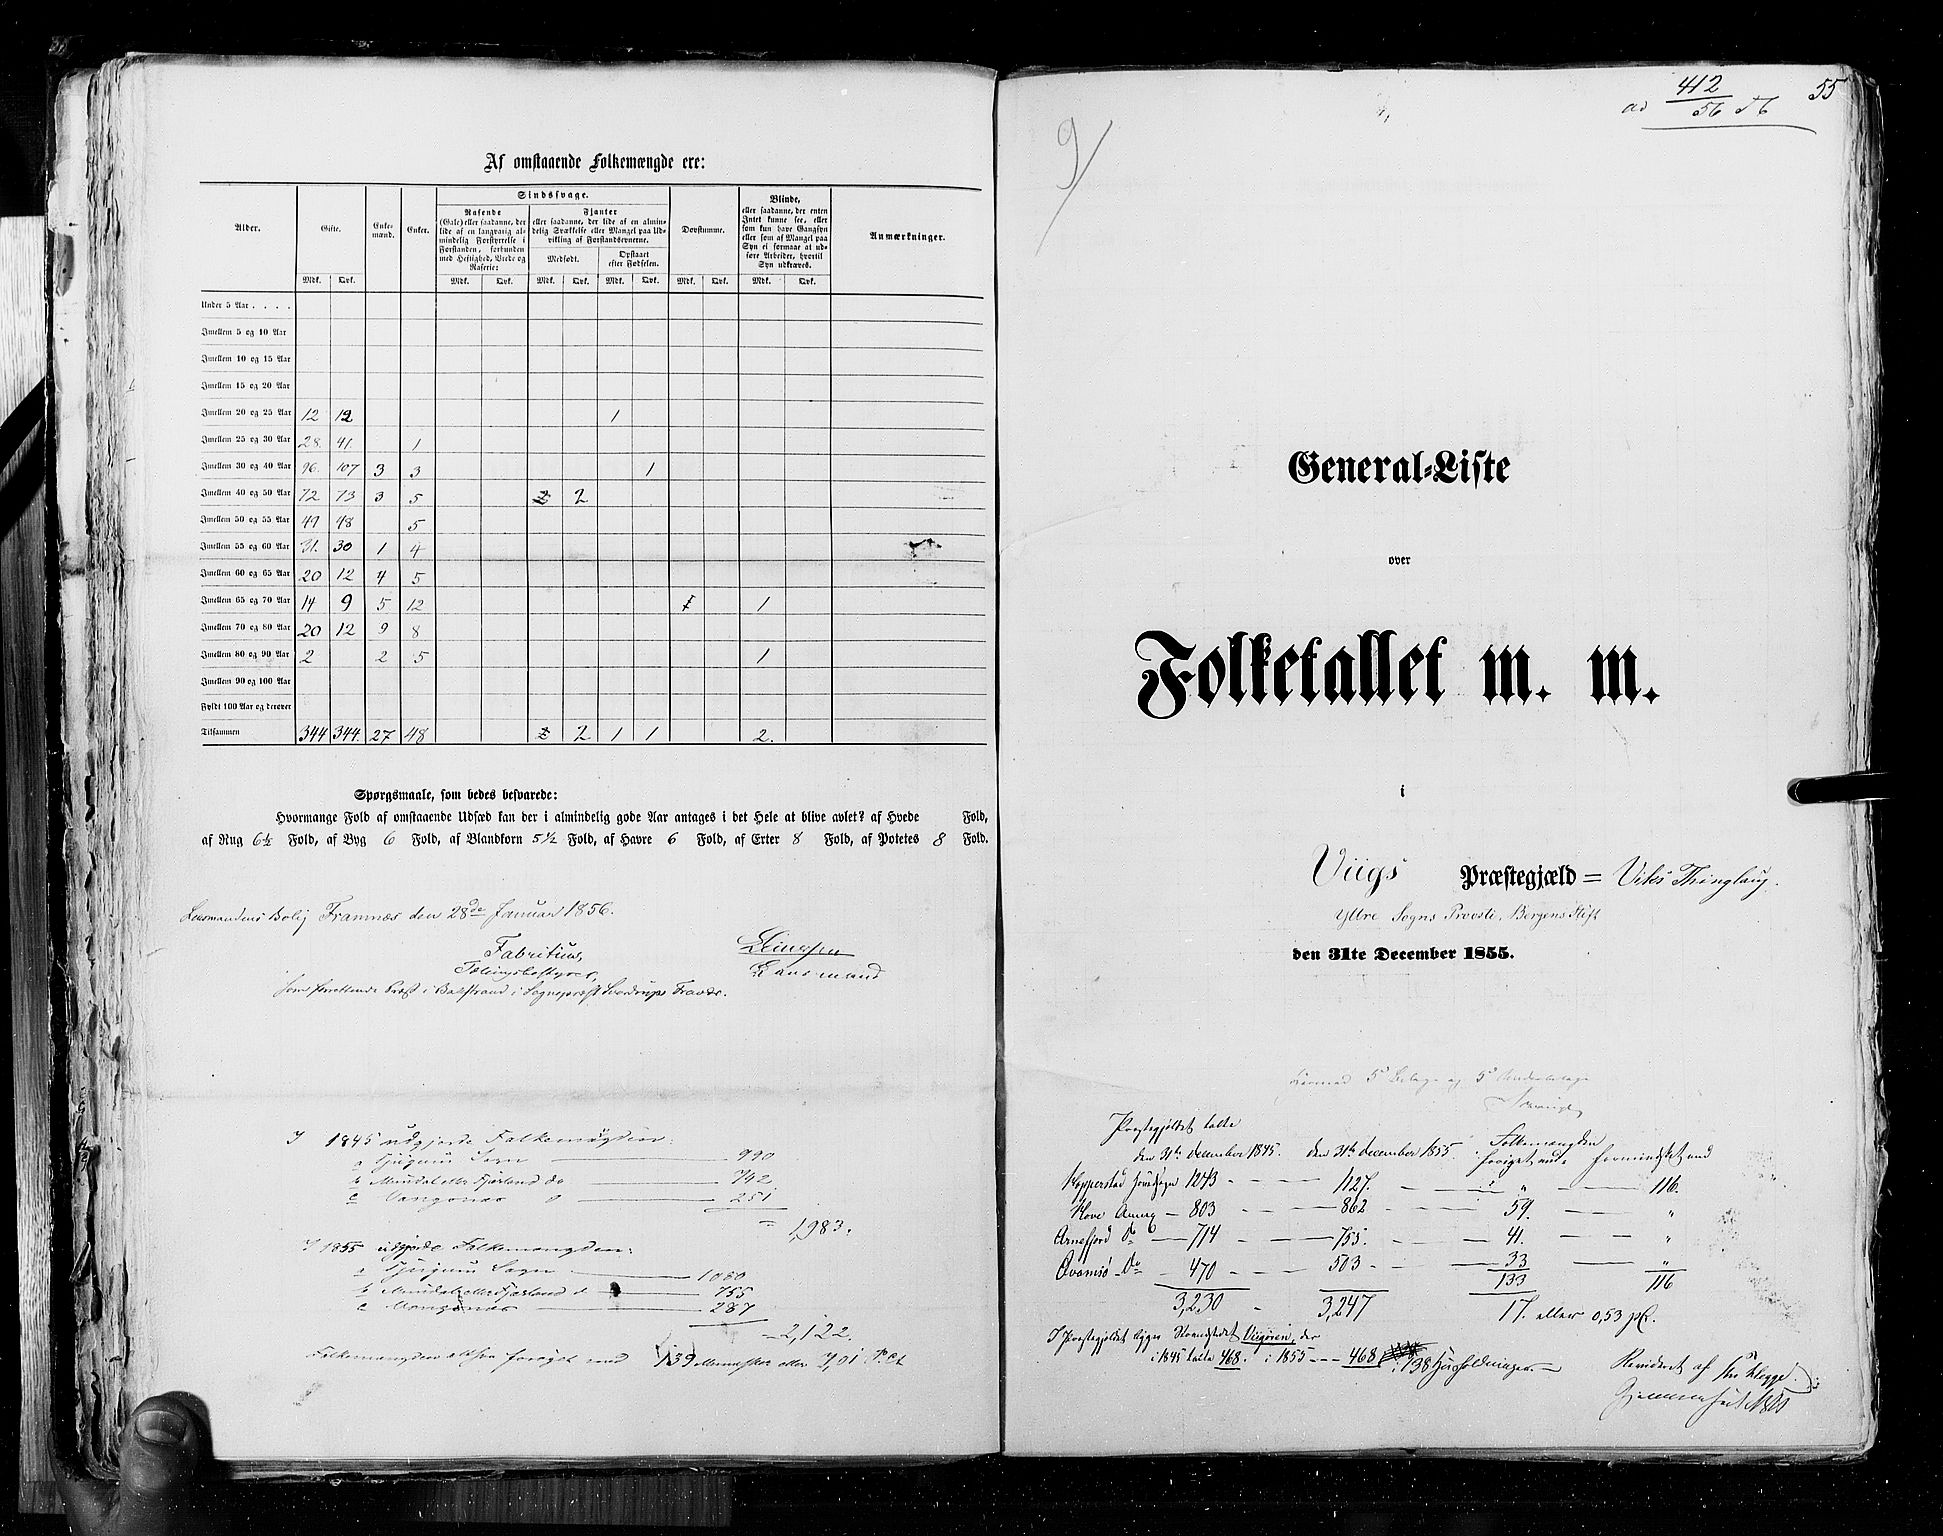 RA, Folketellingen 1855, bind 5: Nordre Bergenhus amt, Romsdal amt og Søndre Trondhjem amt, 1855, s. 55